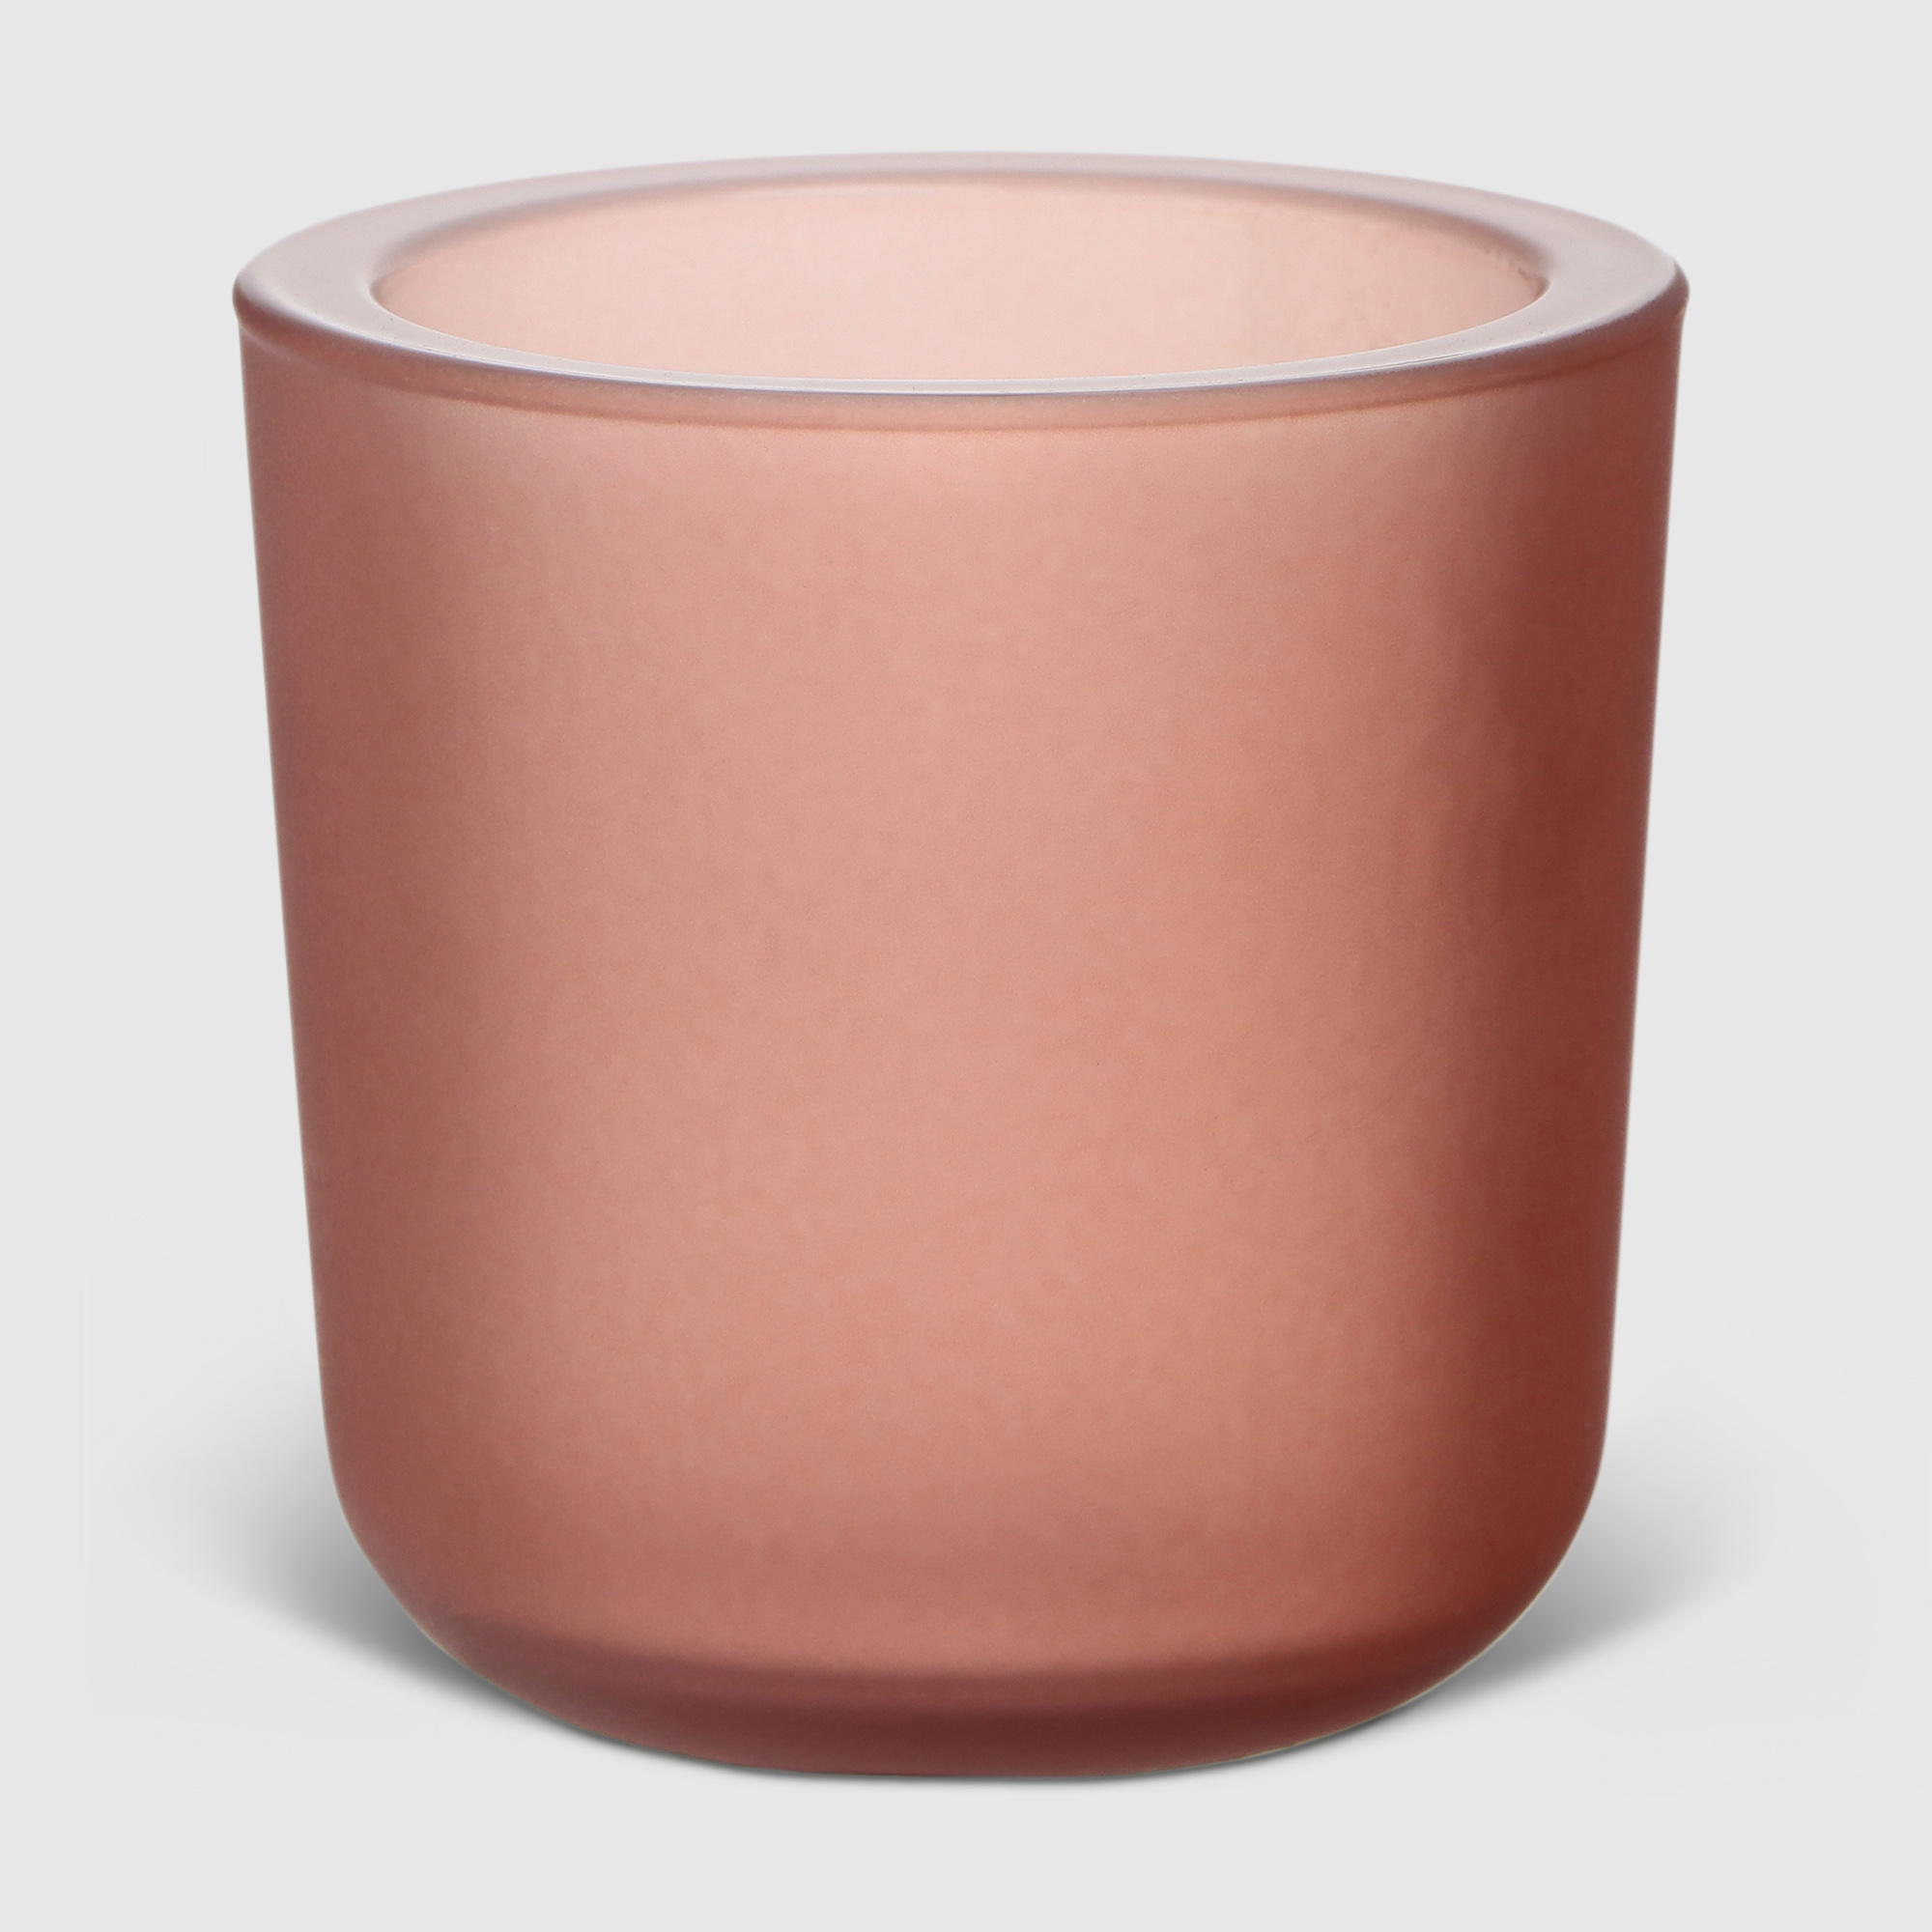 Ваза Hakbijl glass Yannik Розовая 8х8 см ваза san miguel peach cream розовая 31 см